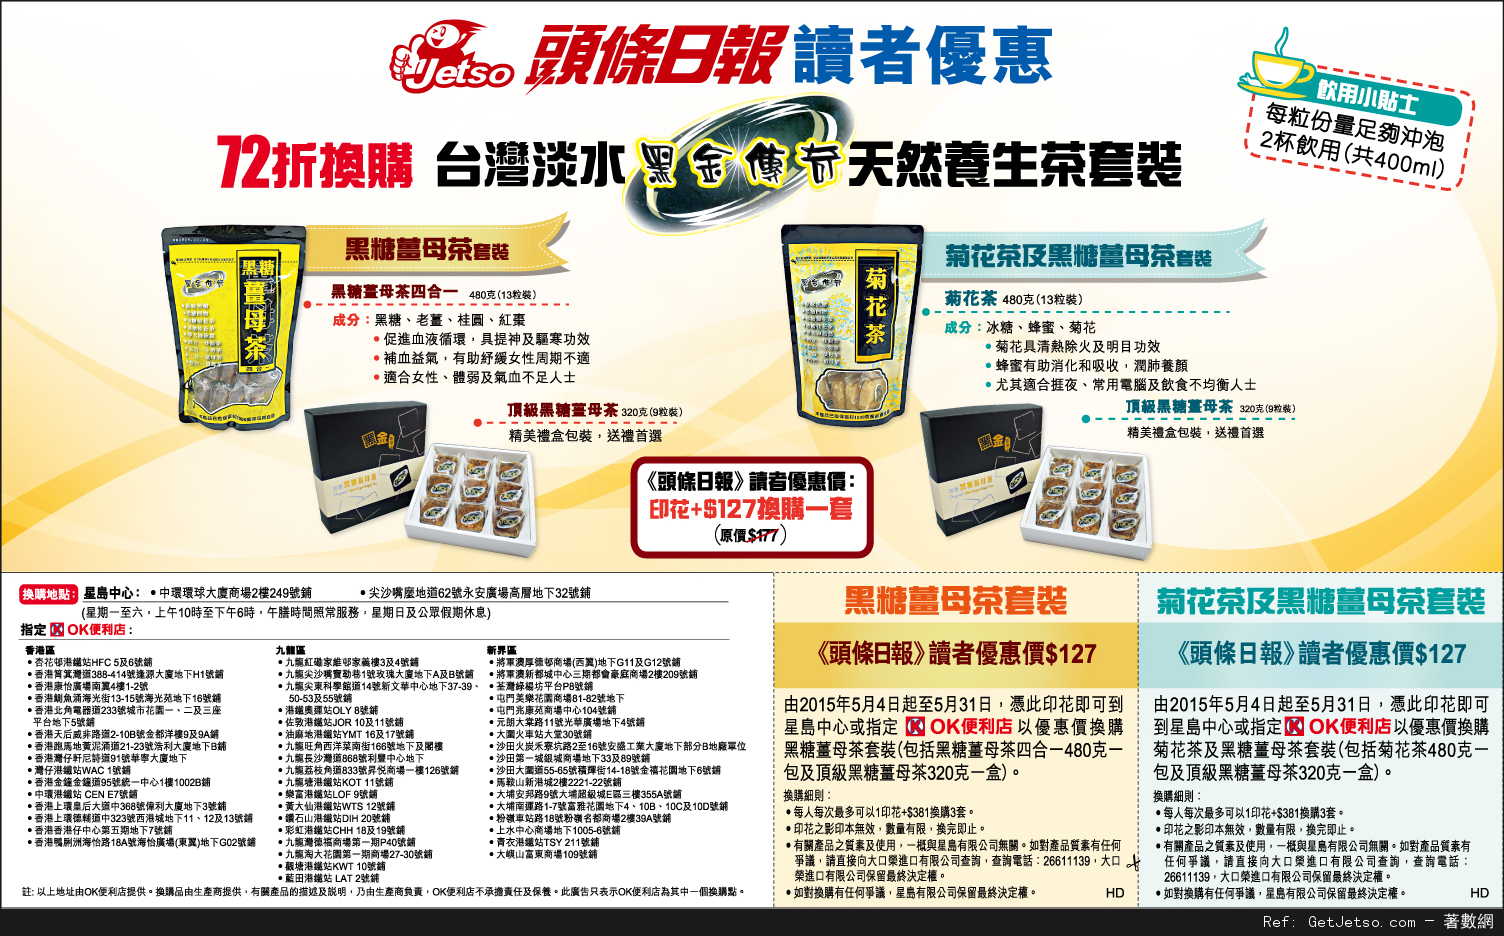 台灣淡水黑金傳奇天然養生茶套裝72折優惠券(至15年5月31日)圖片1